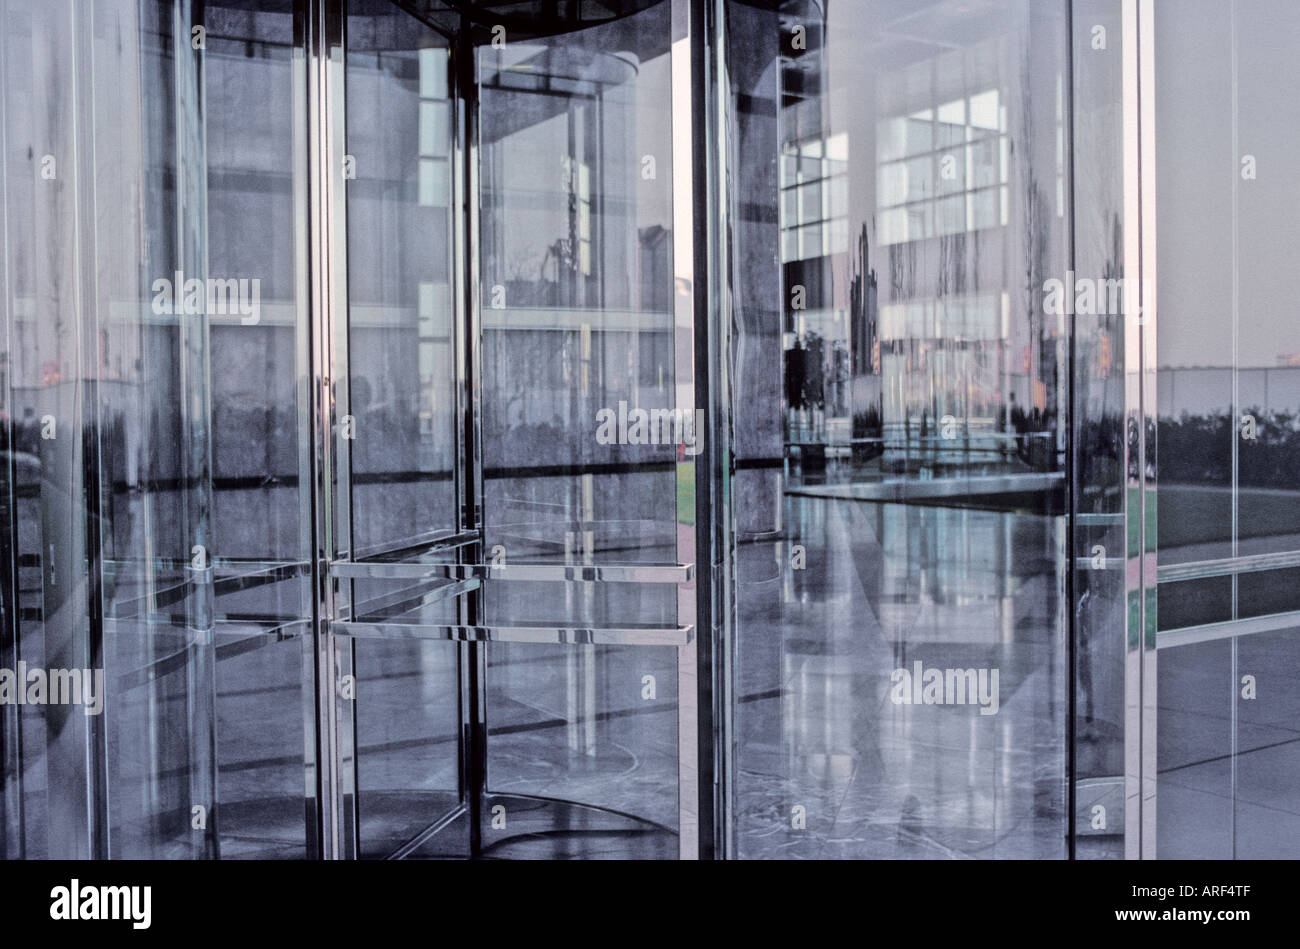 Revolving Doors of Canada House, Canary Wharf, London, England Stock Photo